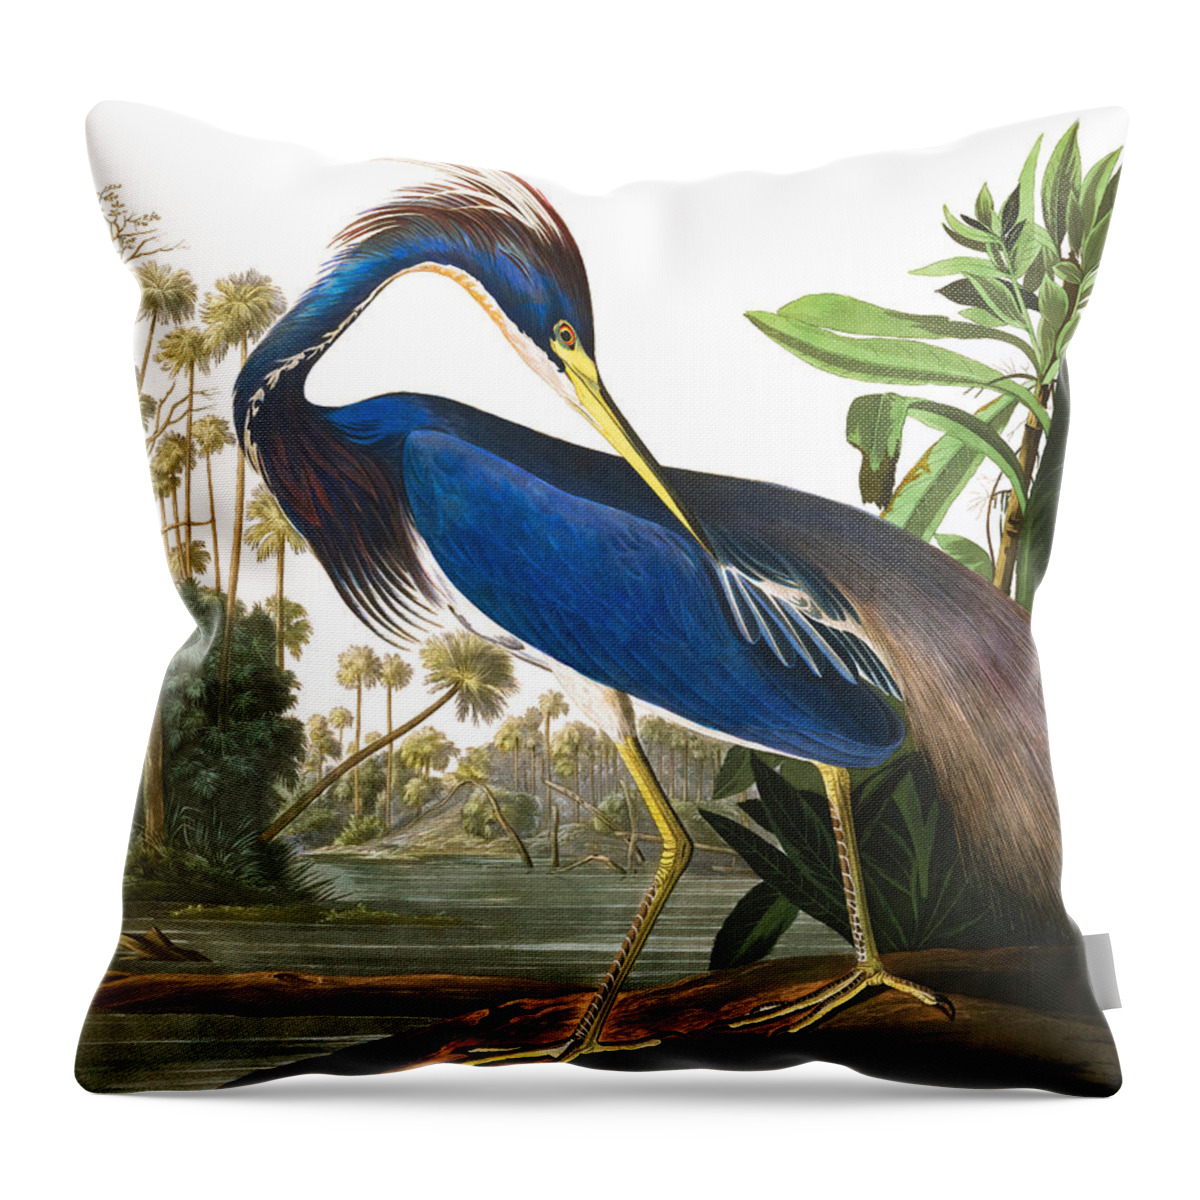 John James Audubon Throw Pillow featuring the painting Louisiana Heron by John James Audubon